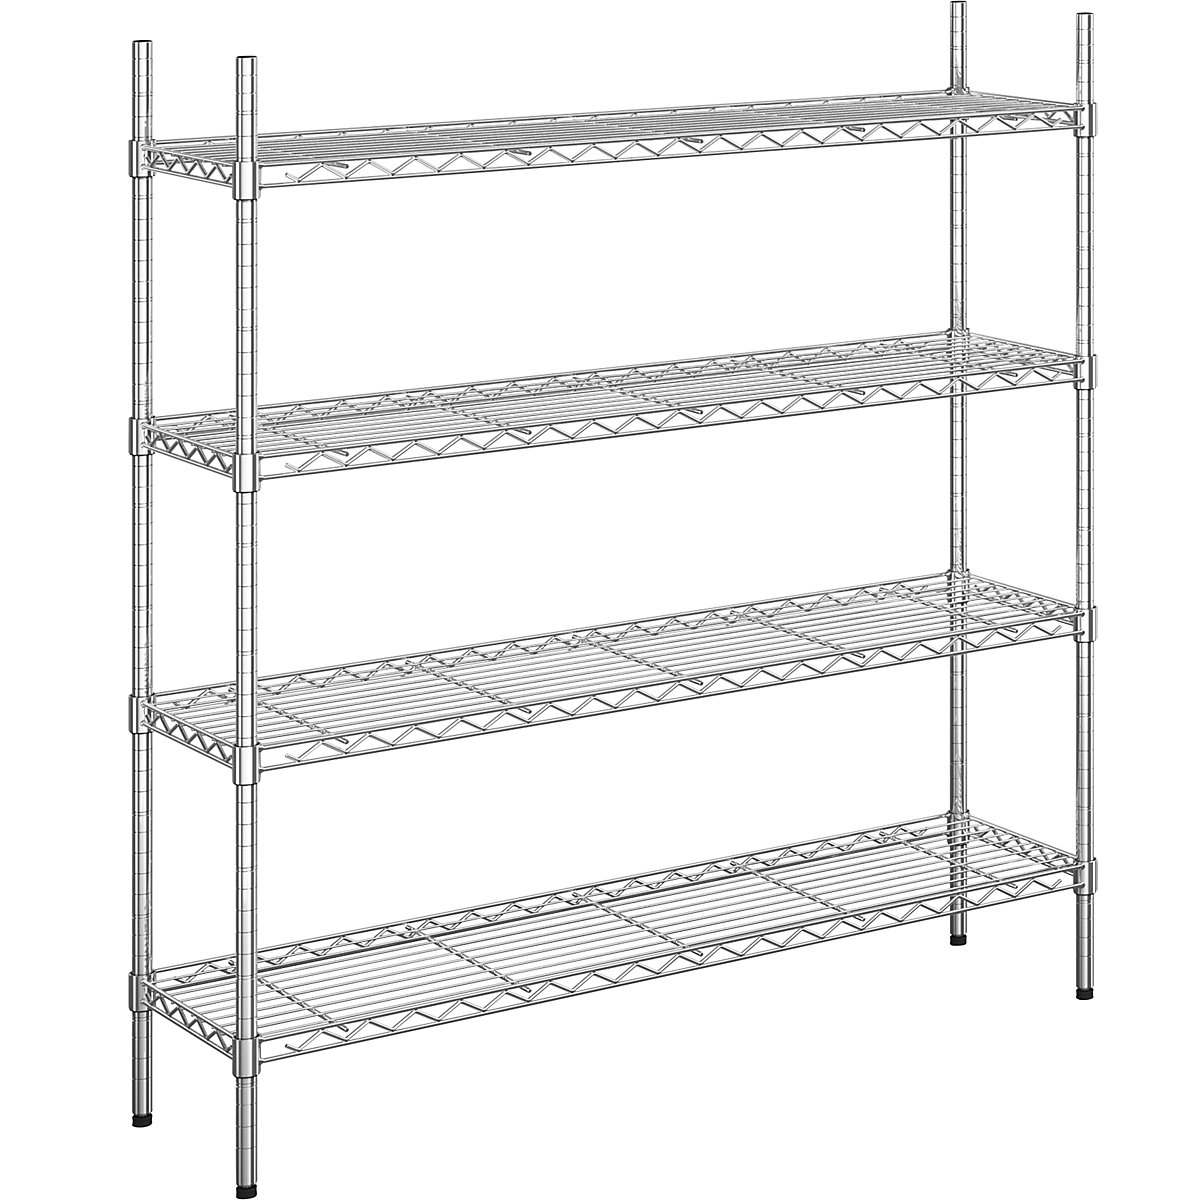 Steel wire mesh shelf unit